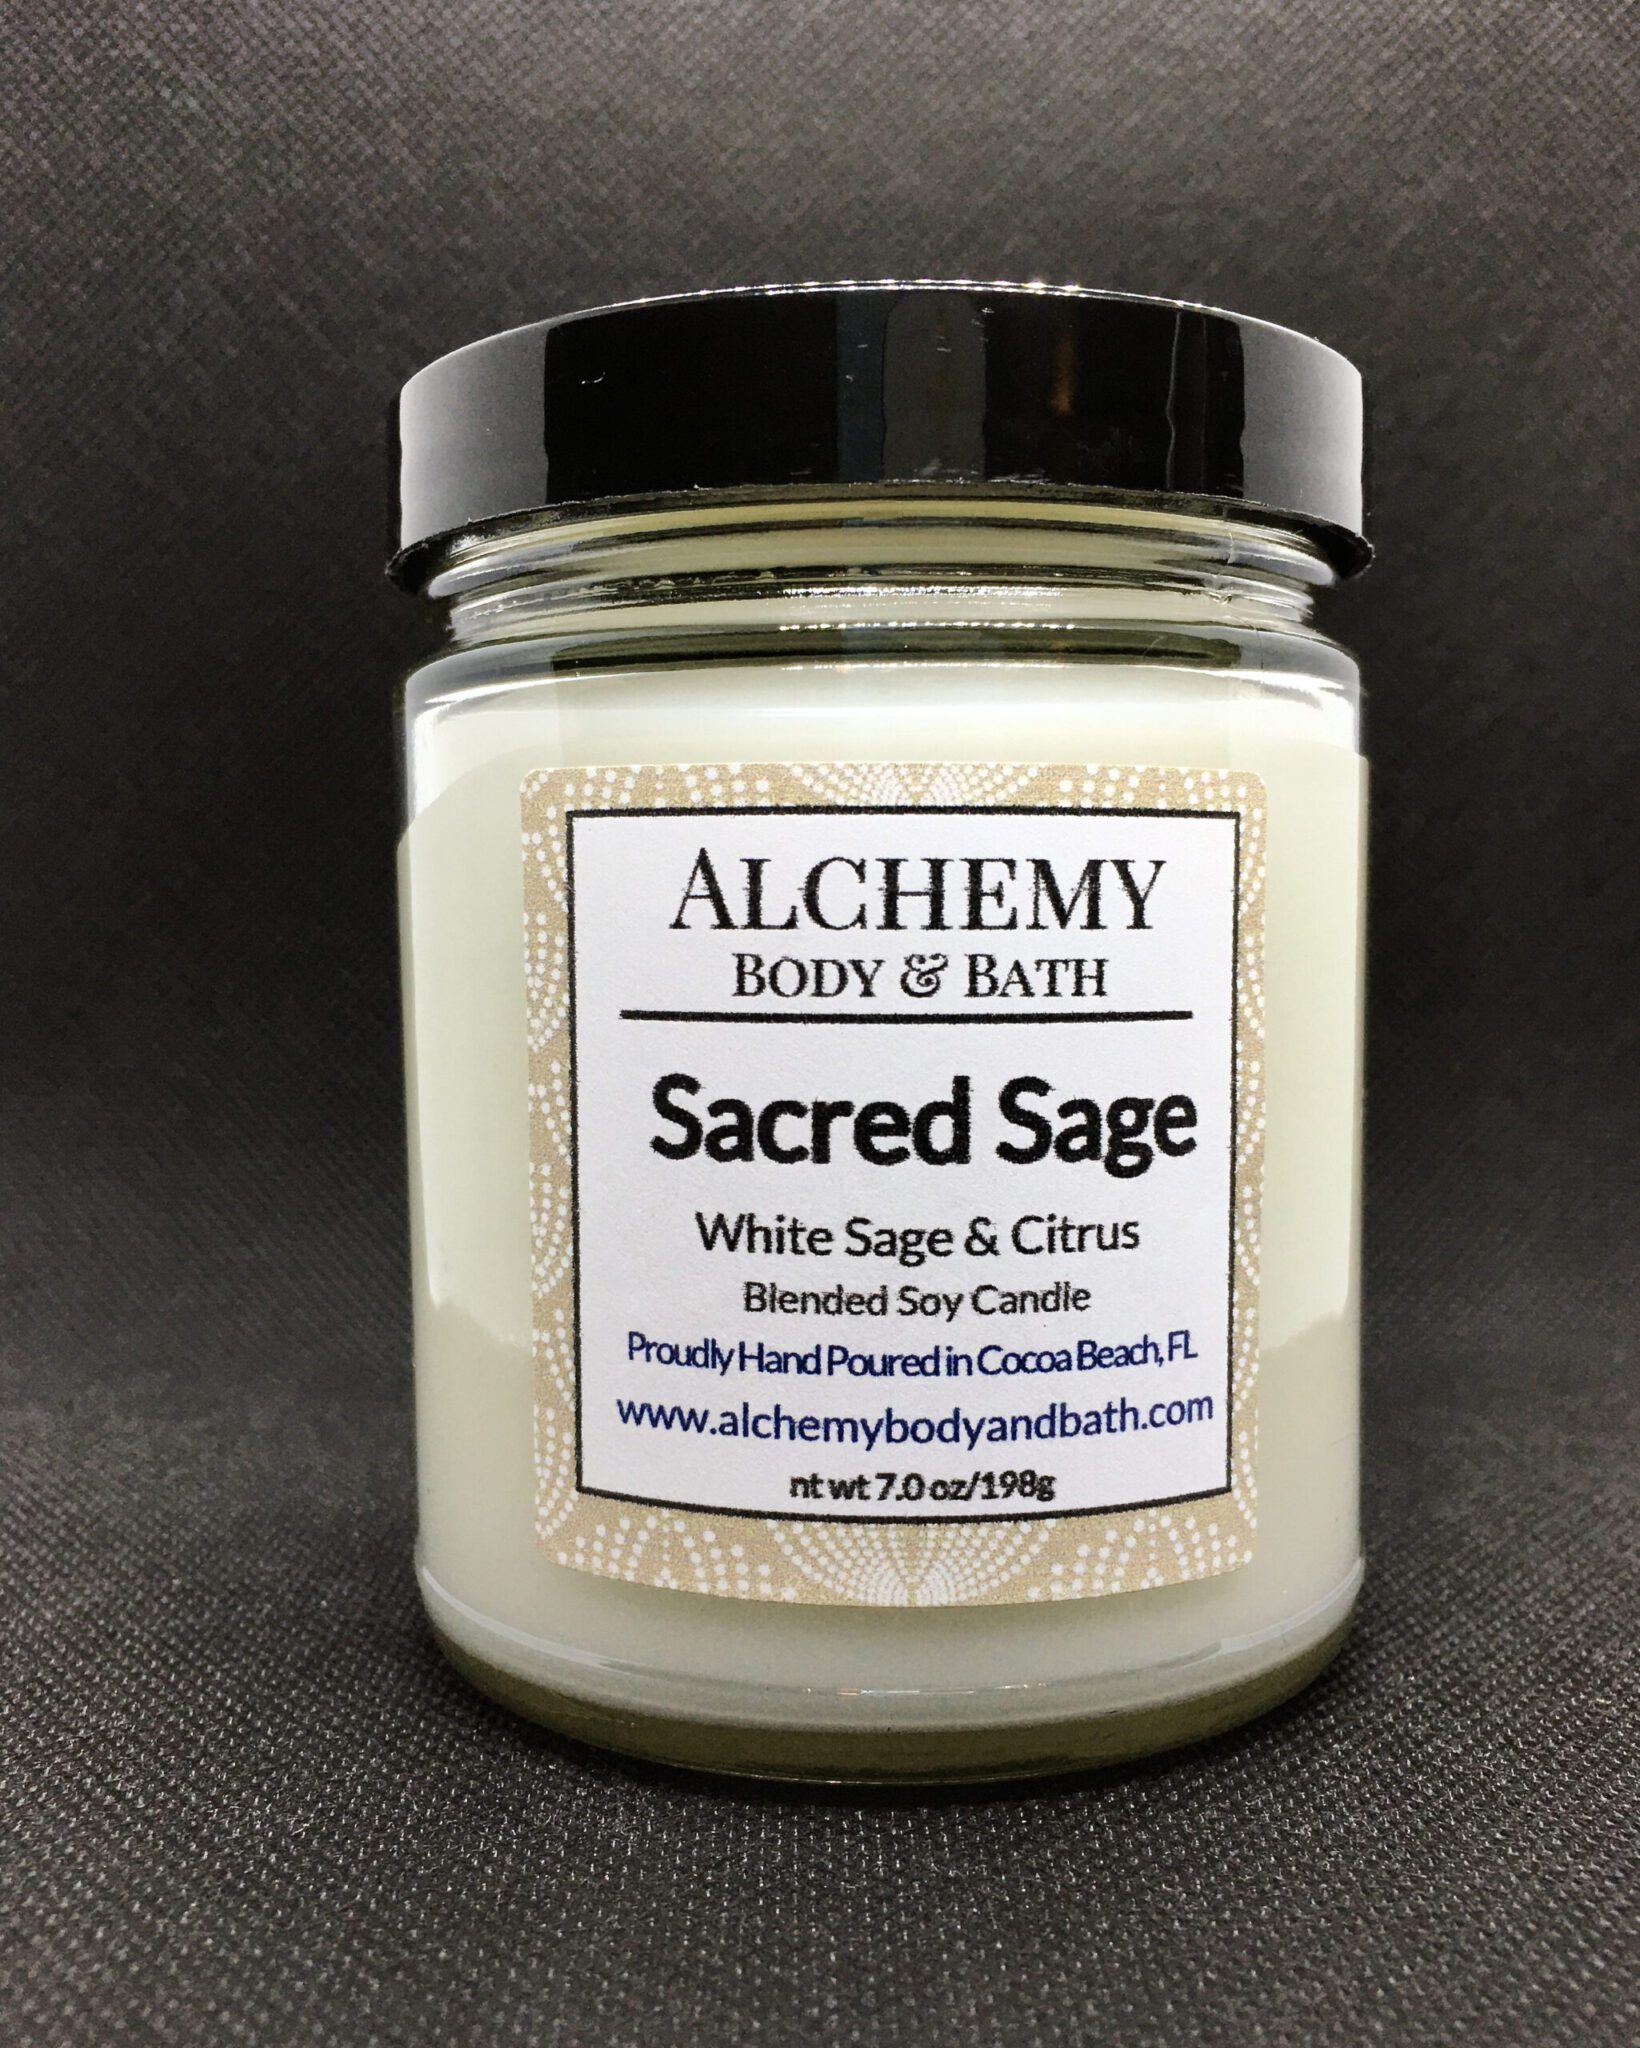 Sacred Sage Alchemy Body & Bath